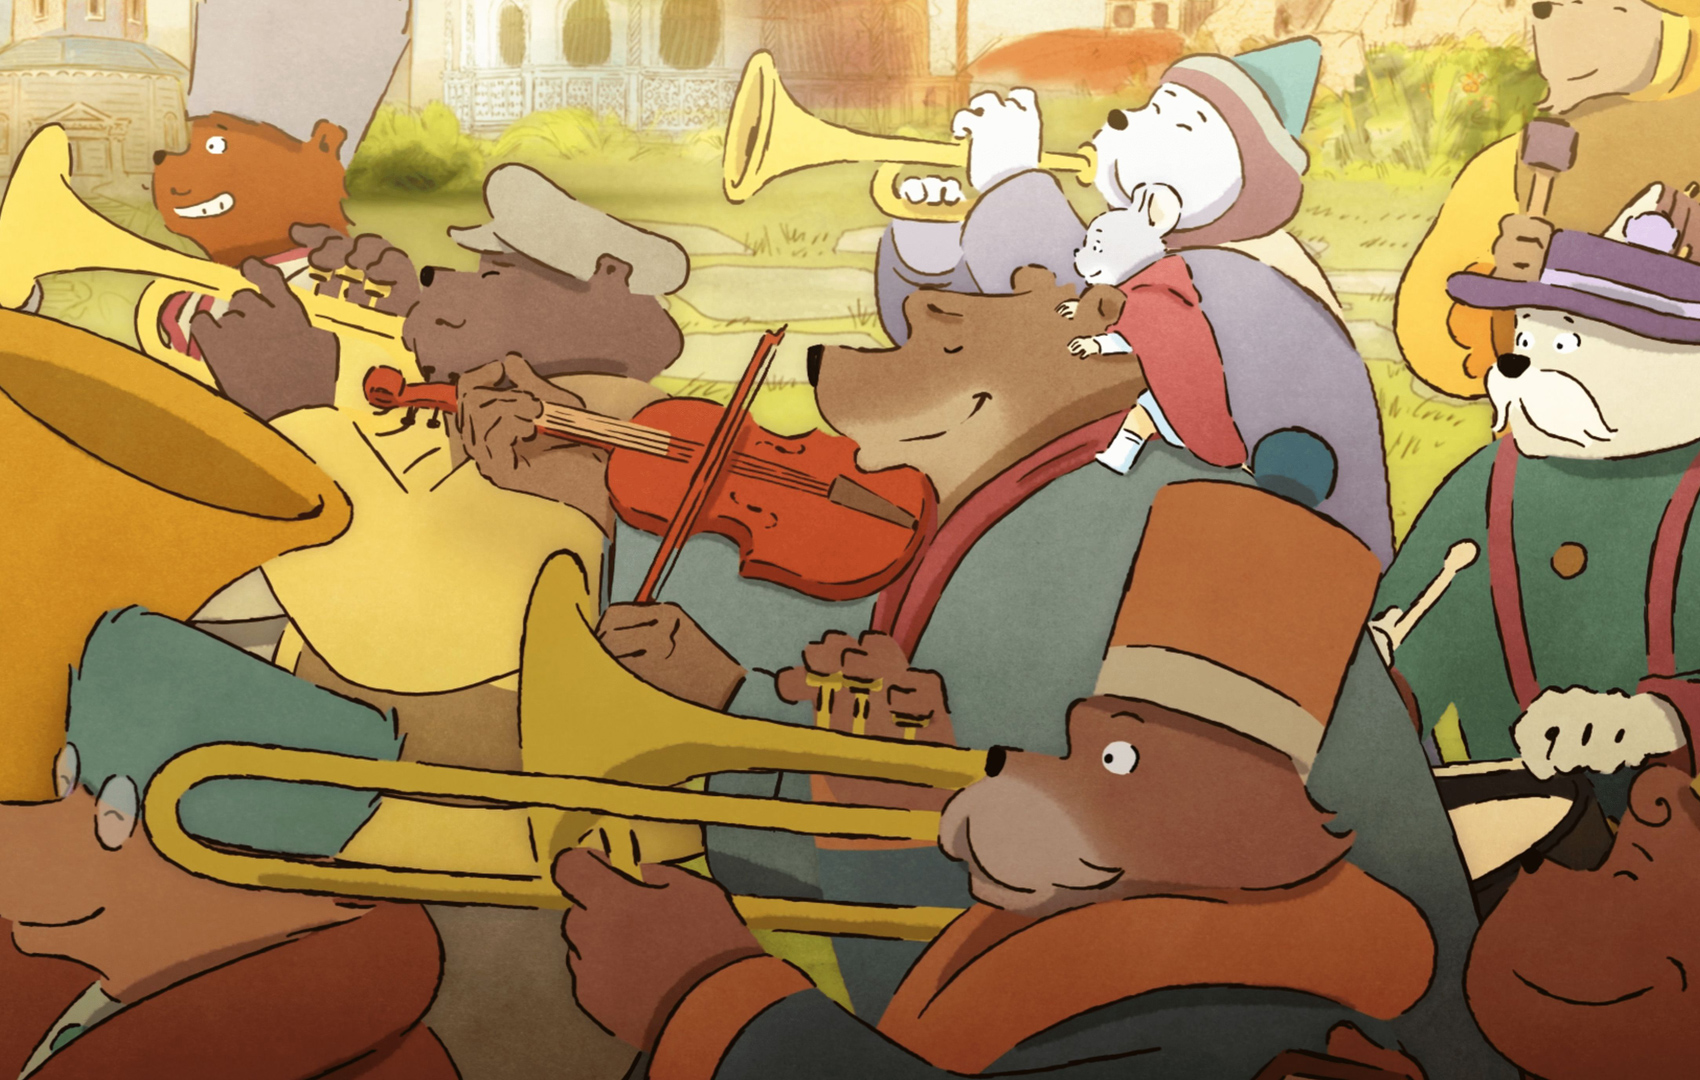 Zeichentrickanimation: Bären marschieren musizierend durchs Bild: Sie spielen Tromete, Posaue, Trommel und Geige.